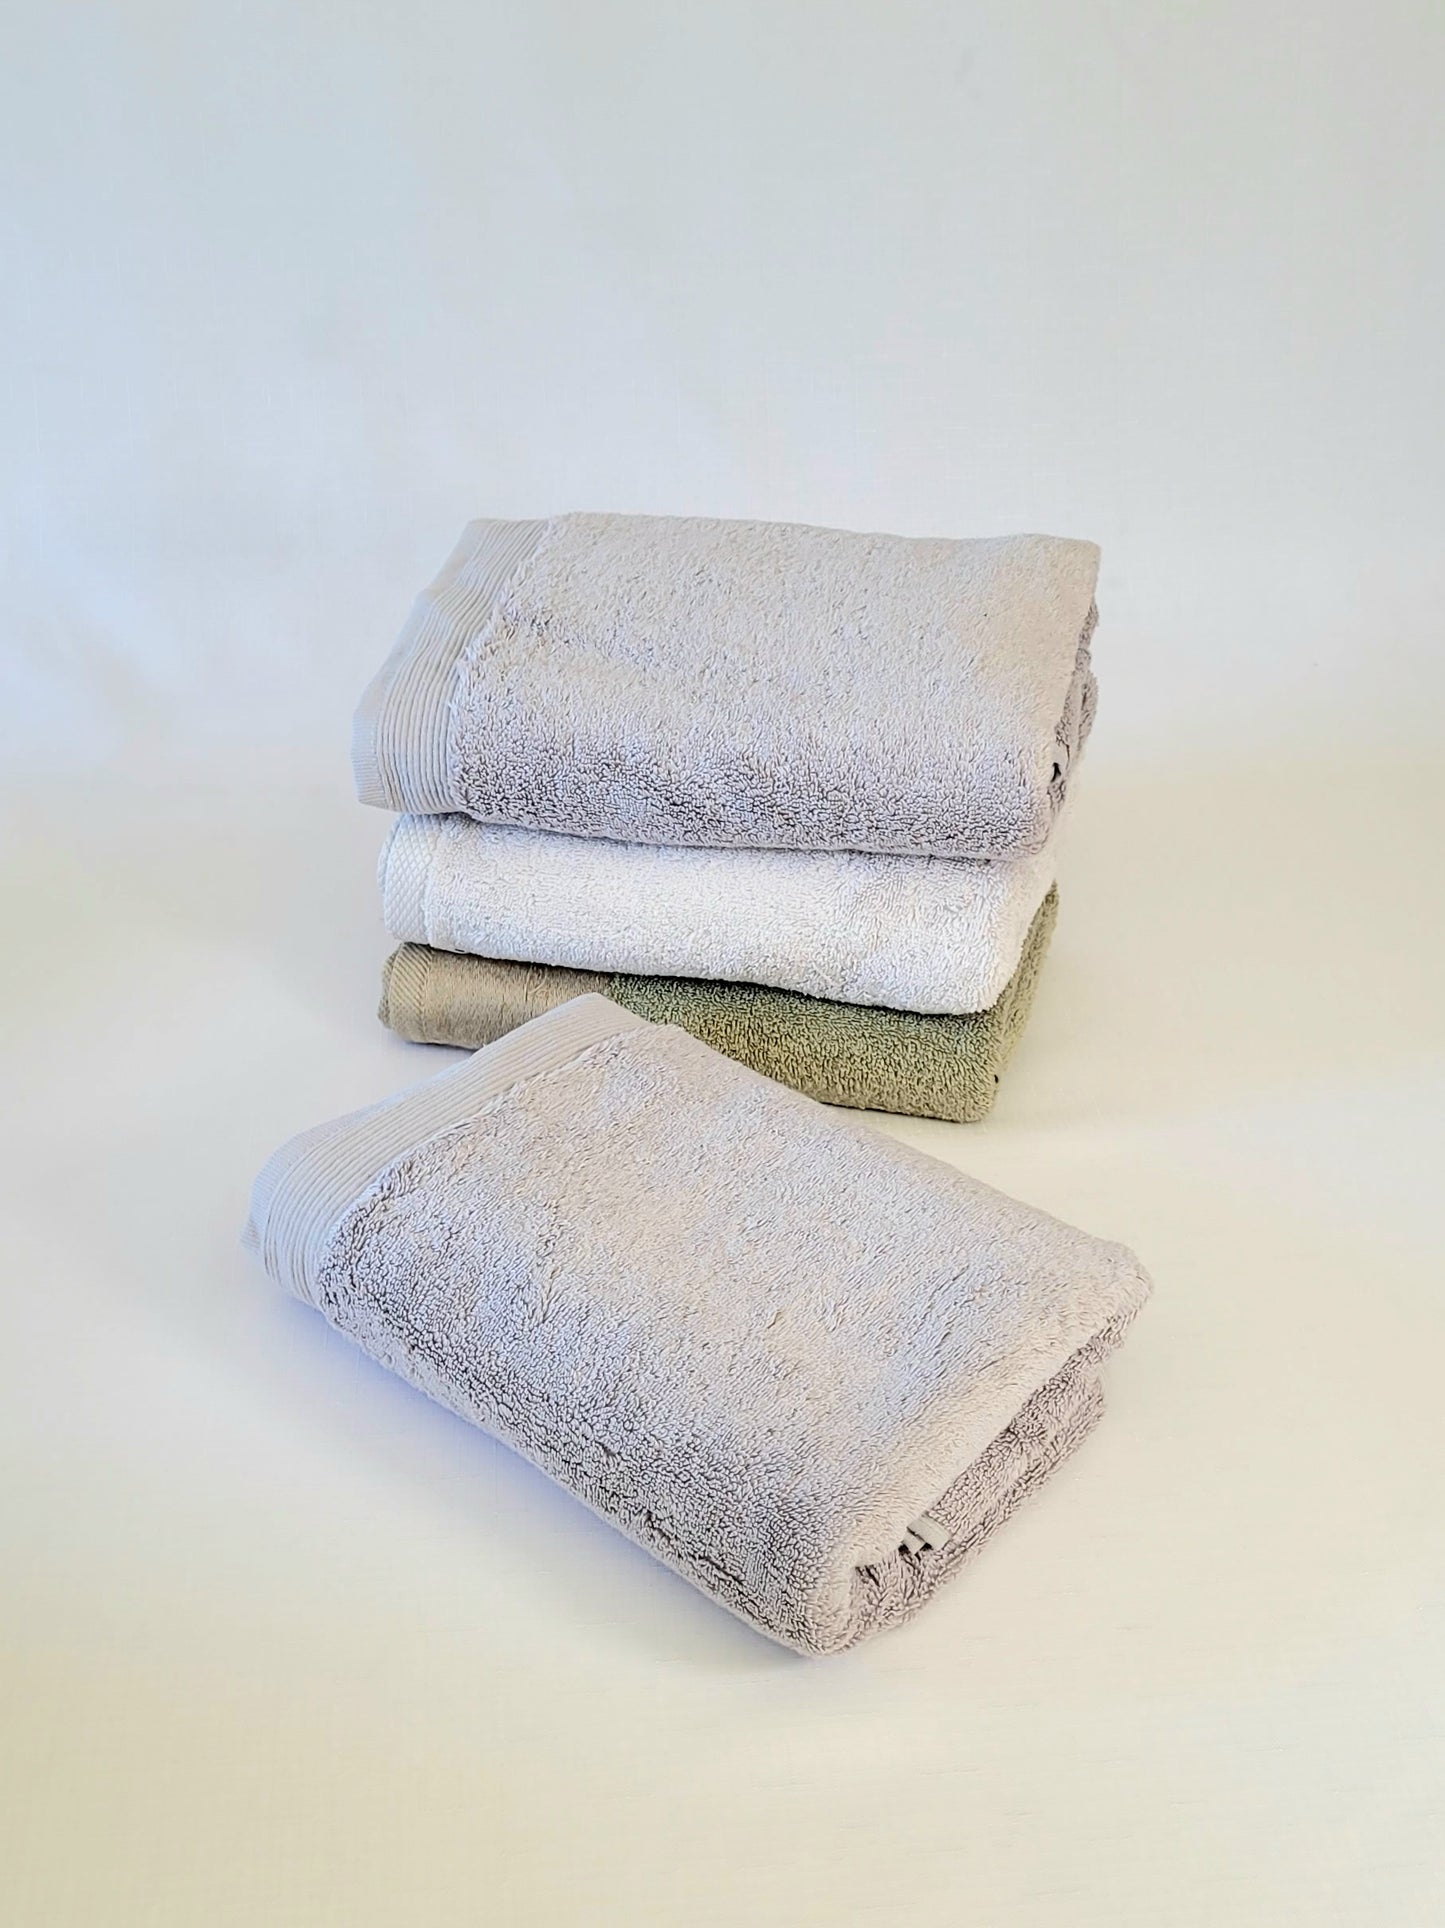 Cotton Bath Towel 50x100 cm, olive, grey, dark blue